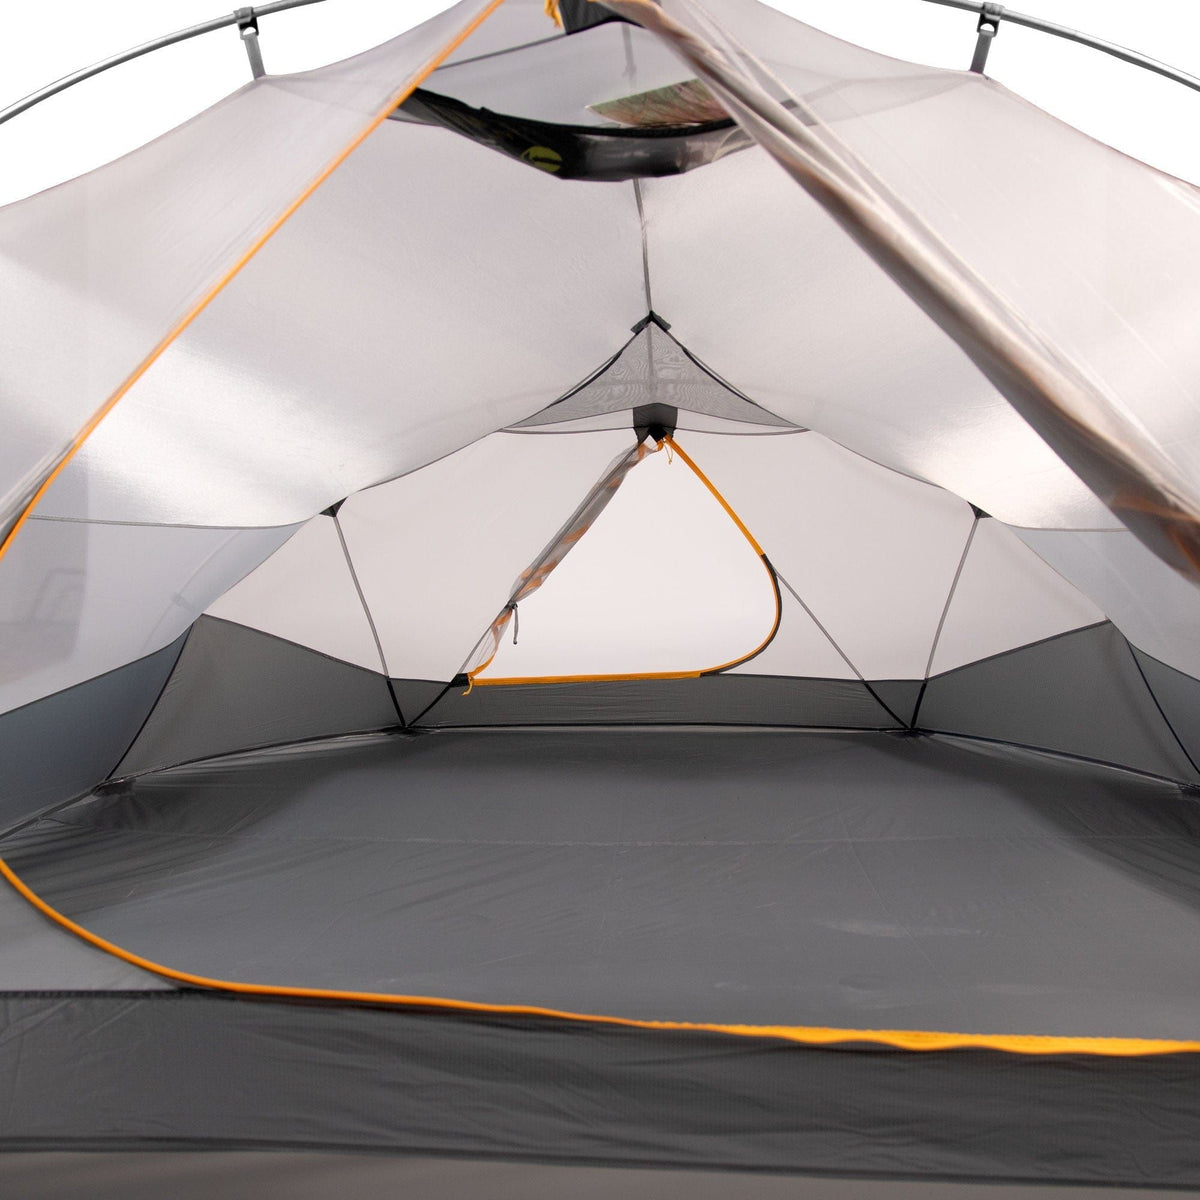 Klymit Maxfield Tents by Klymit